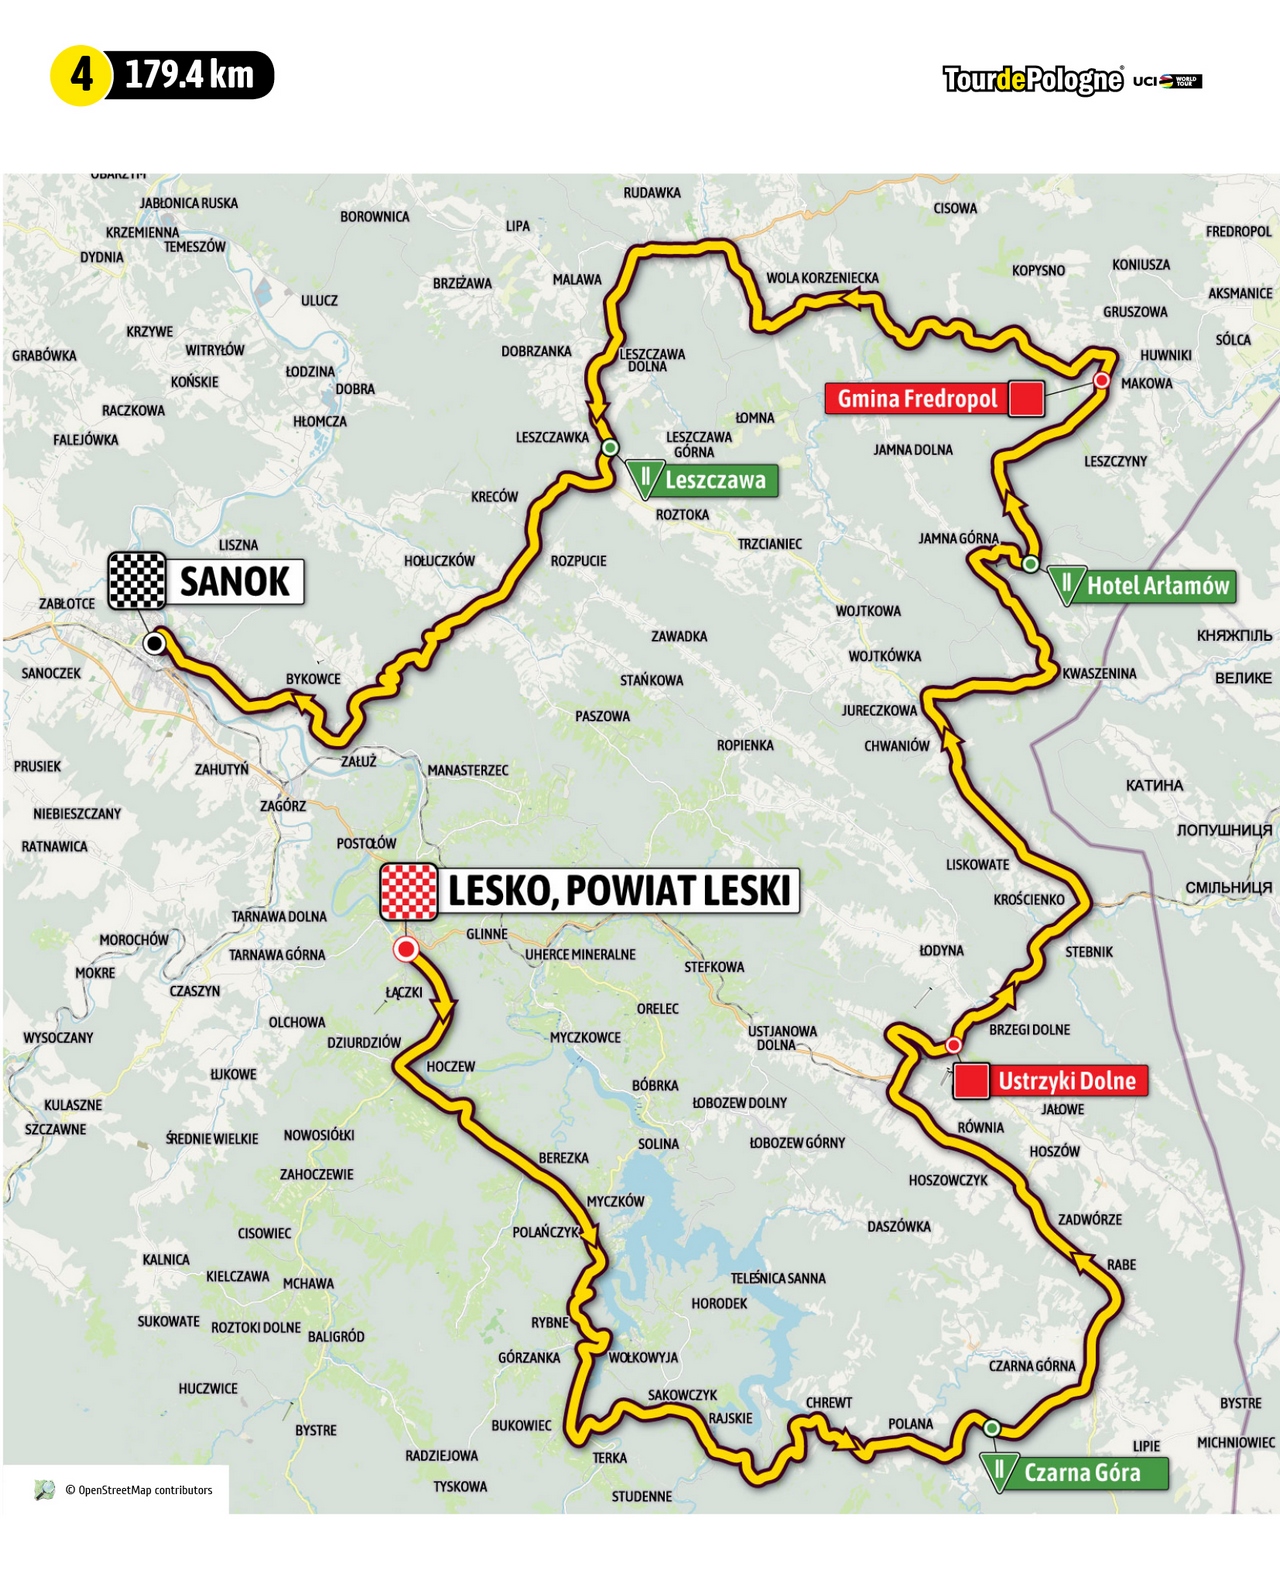 Etap 4 Tour de Pologne (źródło: tourdepologne.pl)